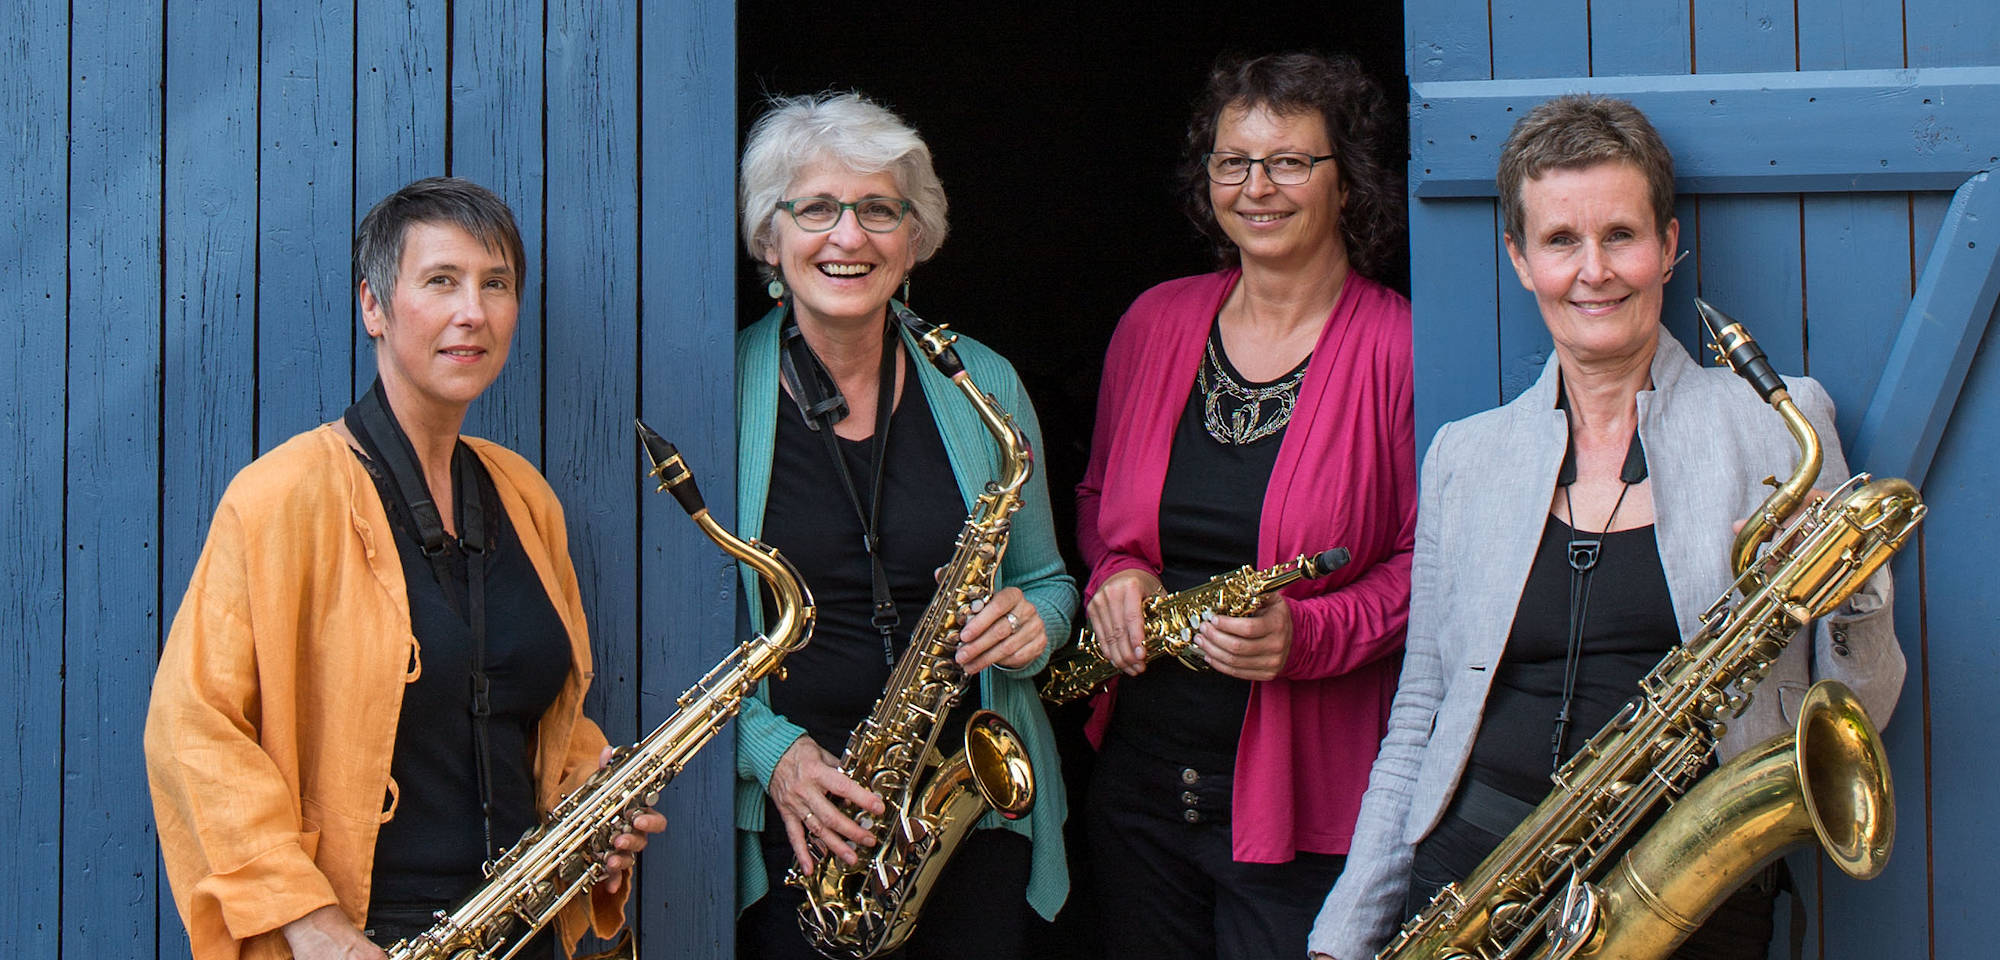 Musikschule Oberweser - Saxophonensemble mit vier Frauen